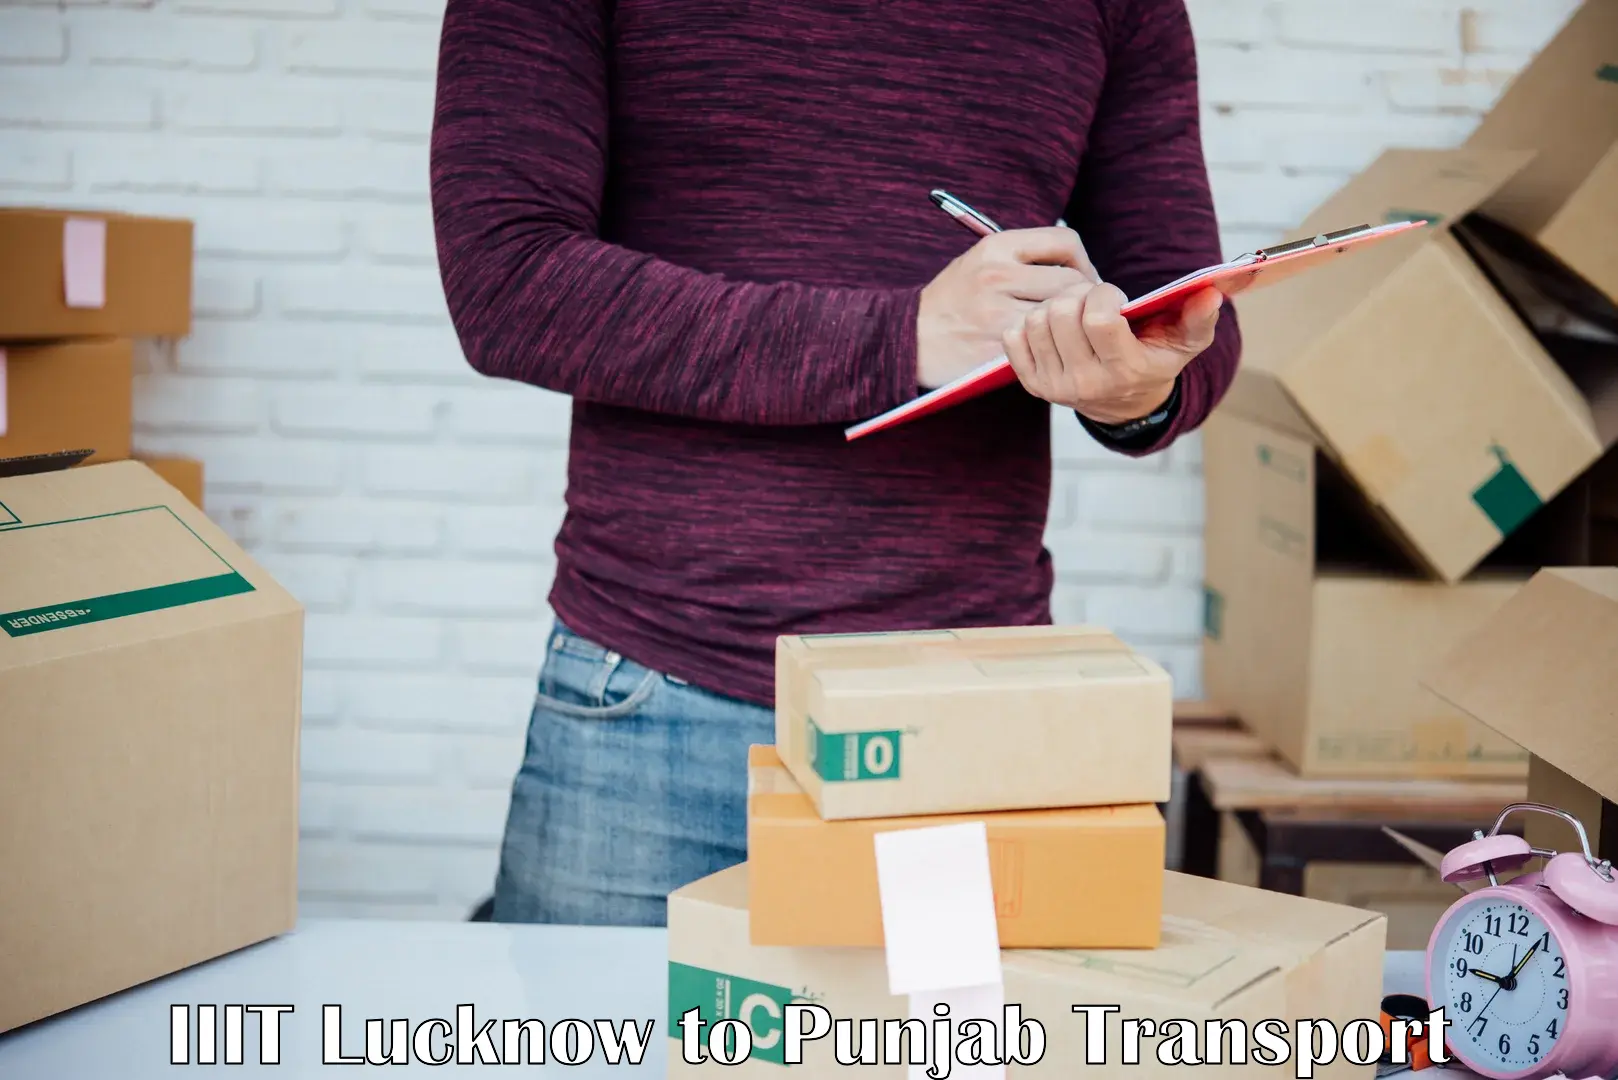 Cargo transport services in IIIT Lucknow to Zira